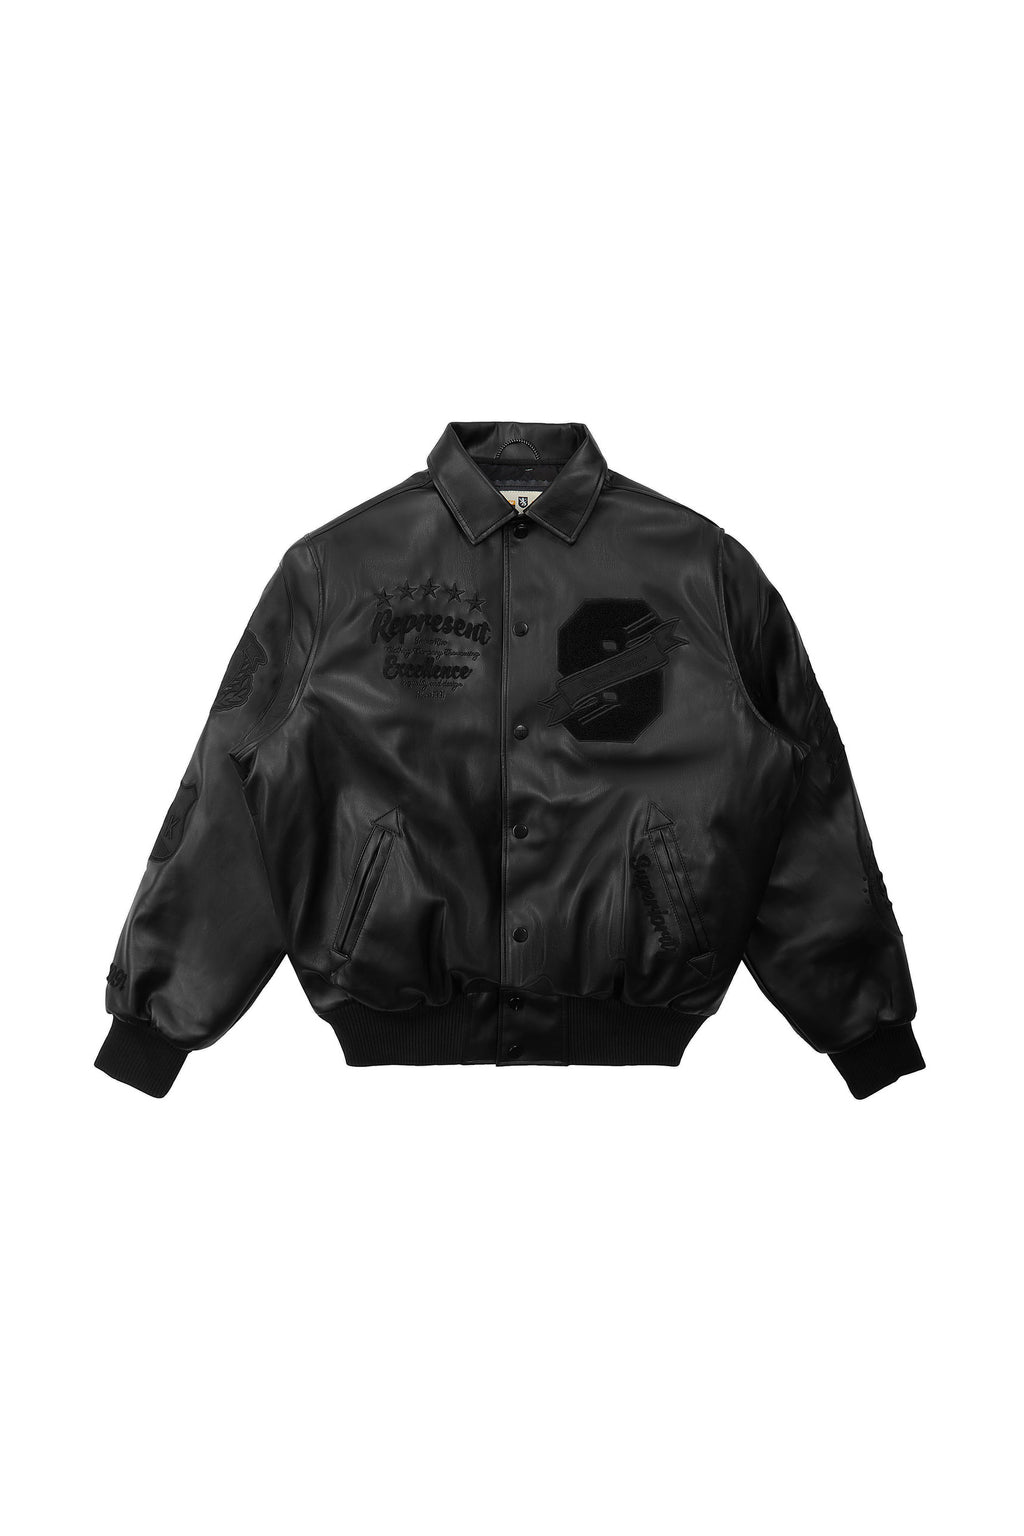 Custom Flocking Embroidered Jacket Mens Street Fashion Colorblock Unisex  Baseball Uniform Varsity Jacket - China Jackets and Mens Jacket price